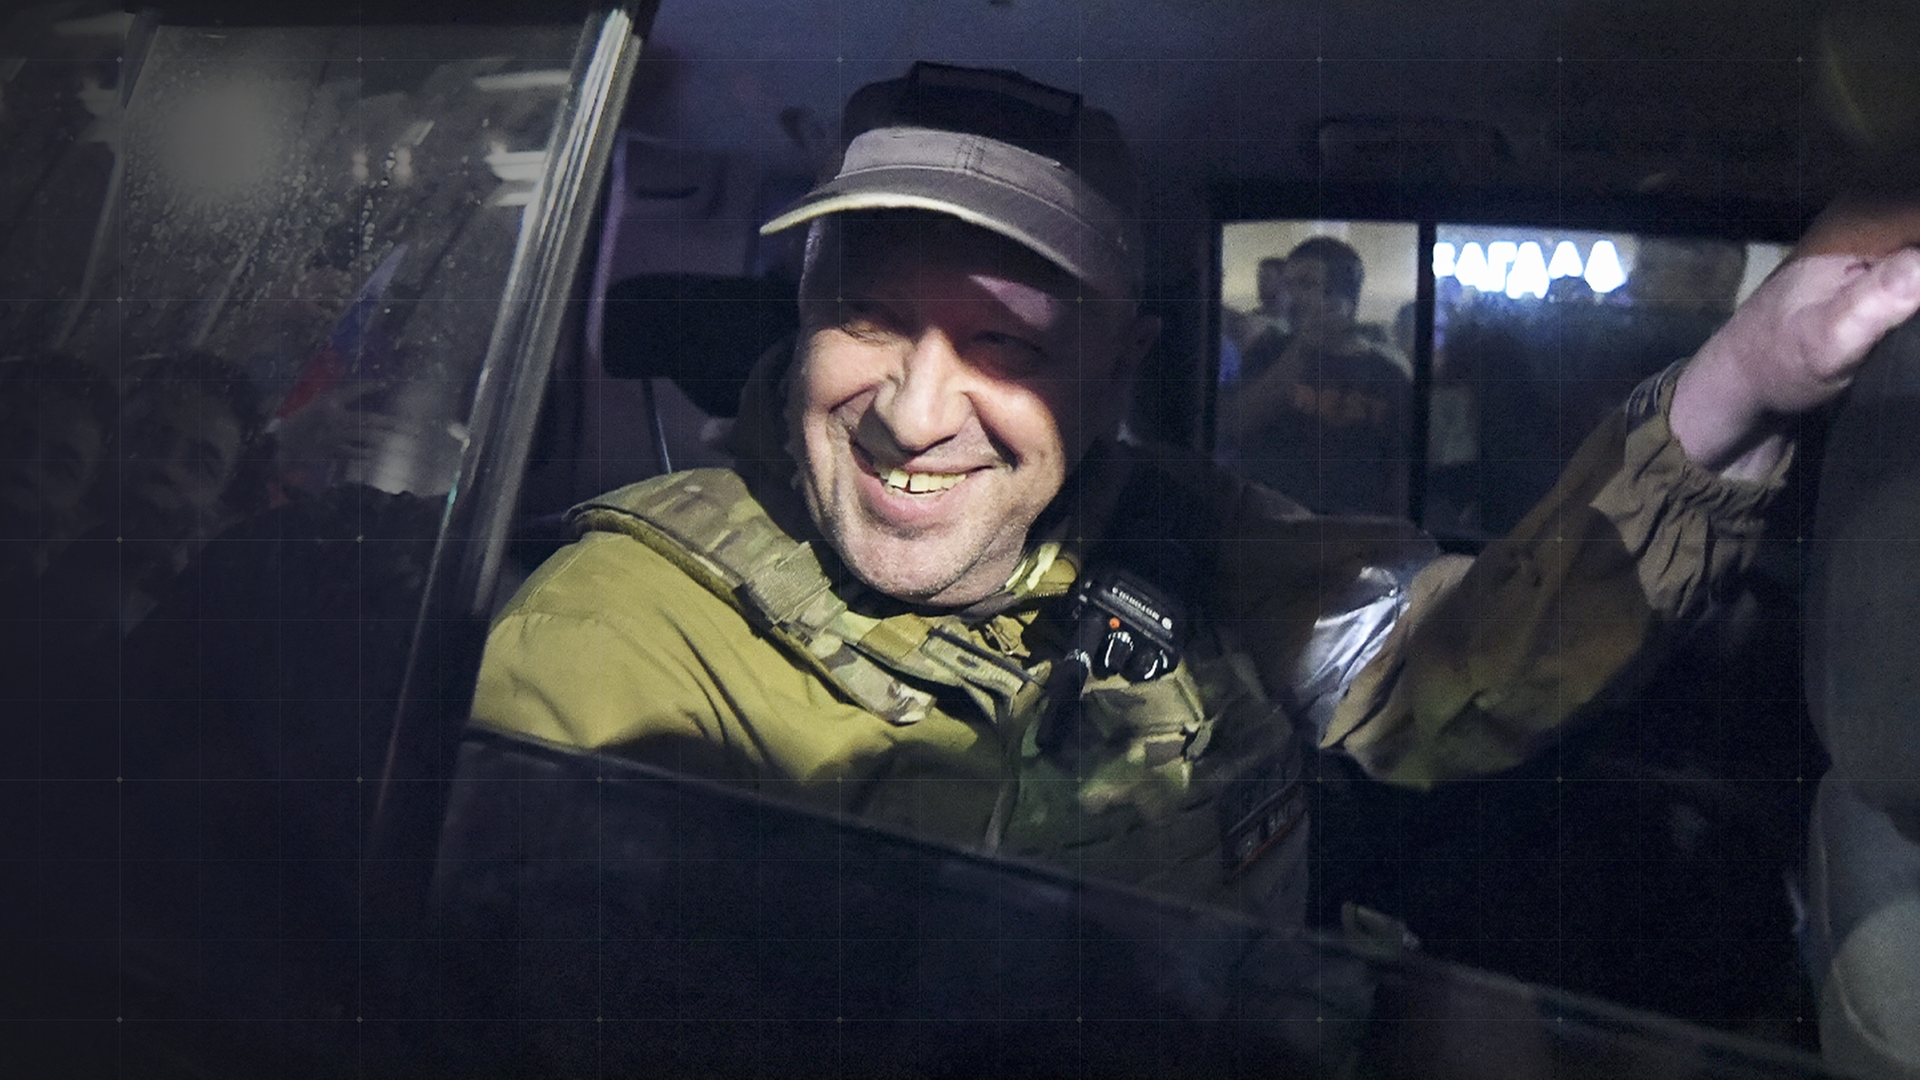 Jewgeni Prigoschin, Chef der Gruppe Wagner, lachend hinter offener Scheibe einer Autotür